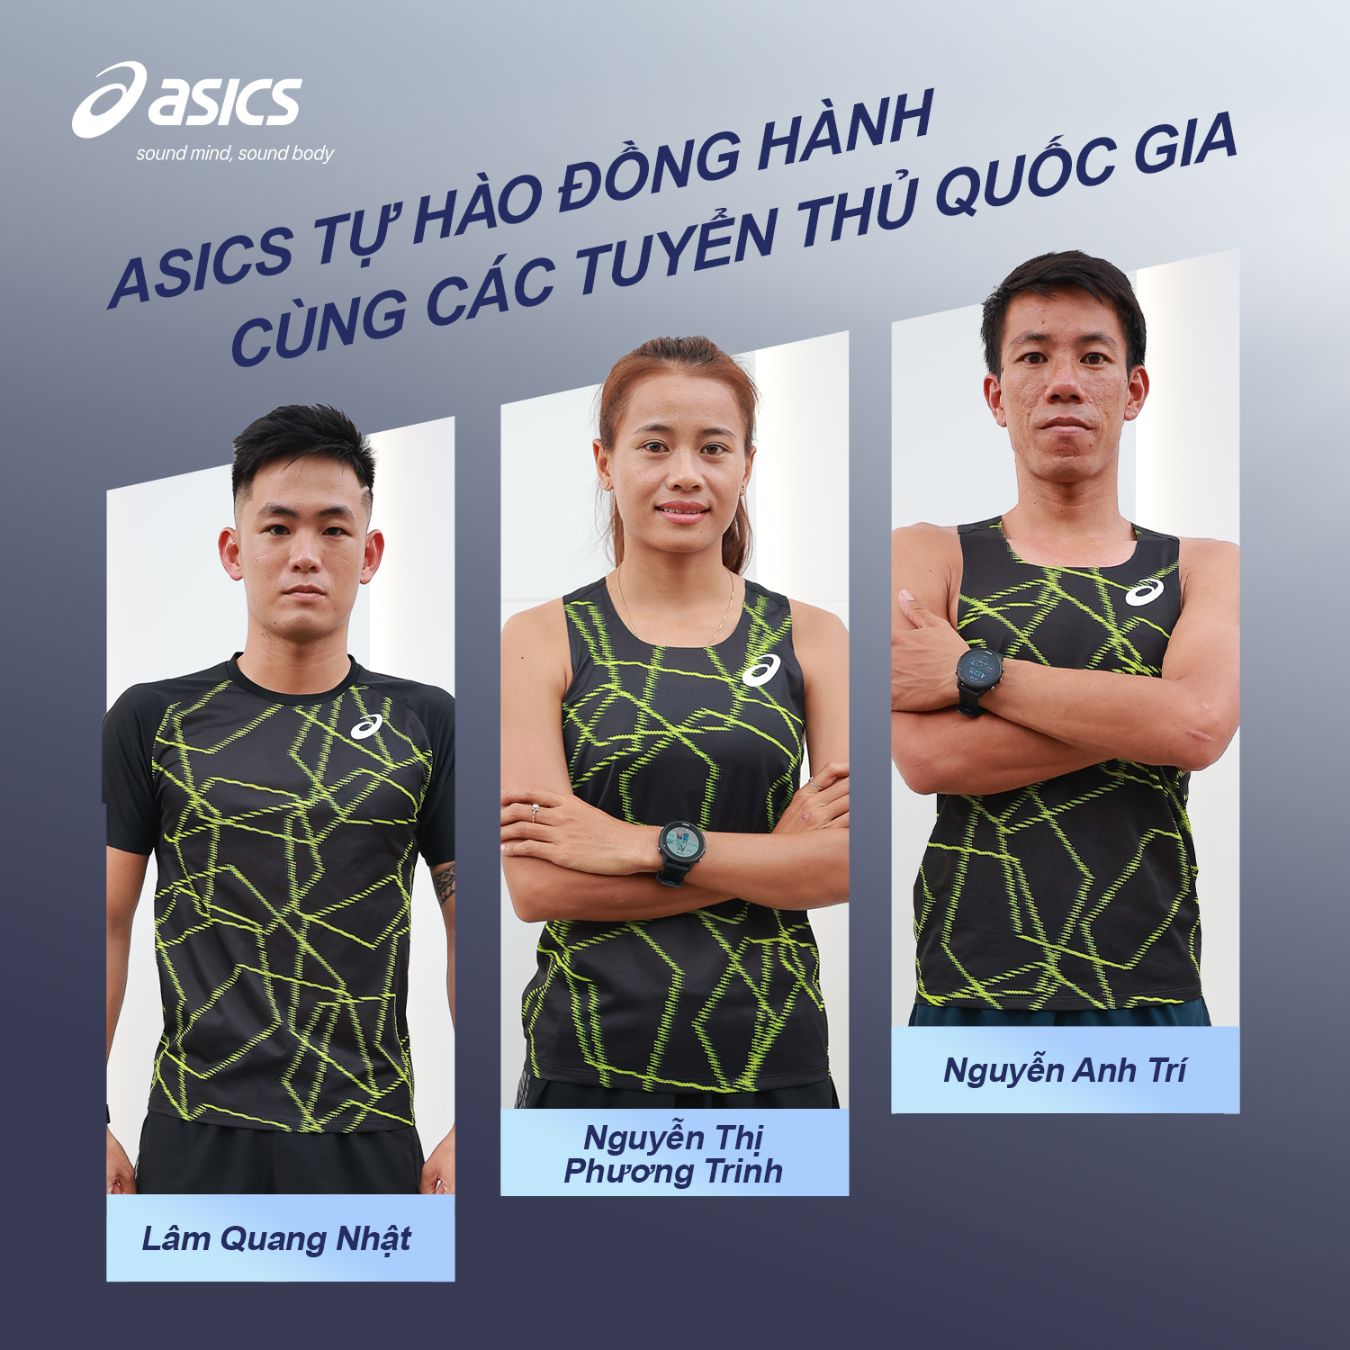 ASICS 1 2 ASICS đồng hành cùng 3 tuyển thủ quốc gia Việt Nam chinh phục đấu trường thể thao phối hợp